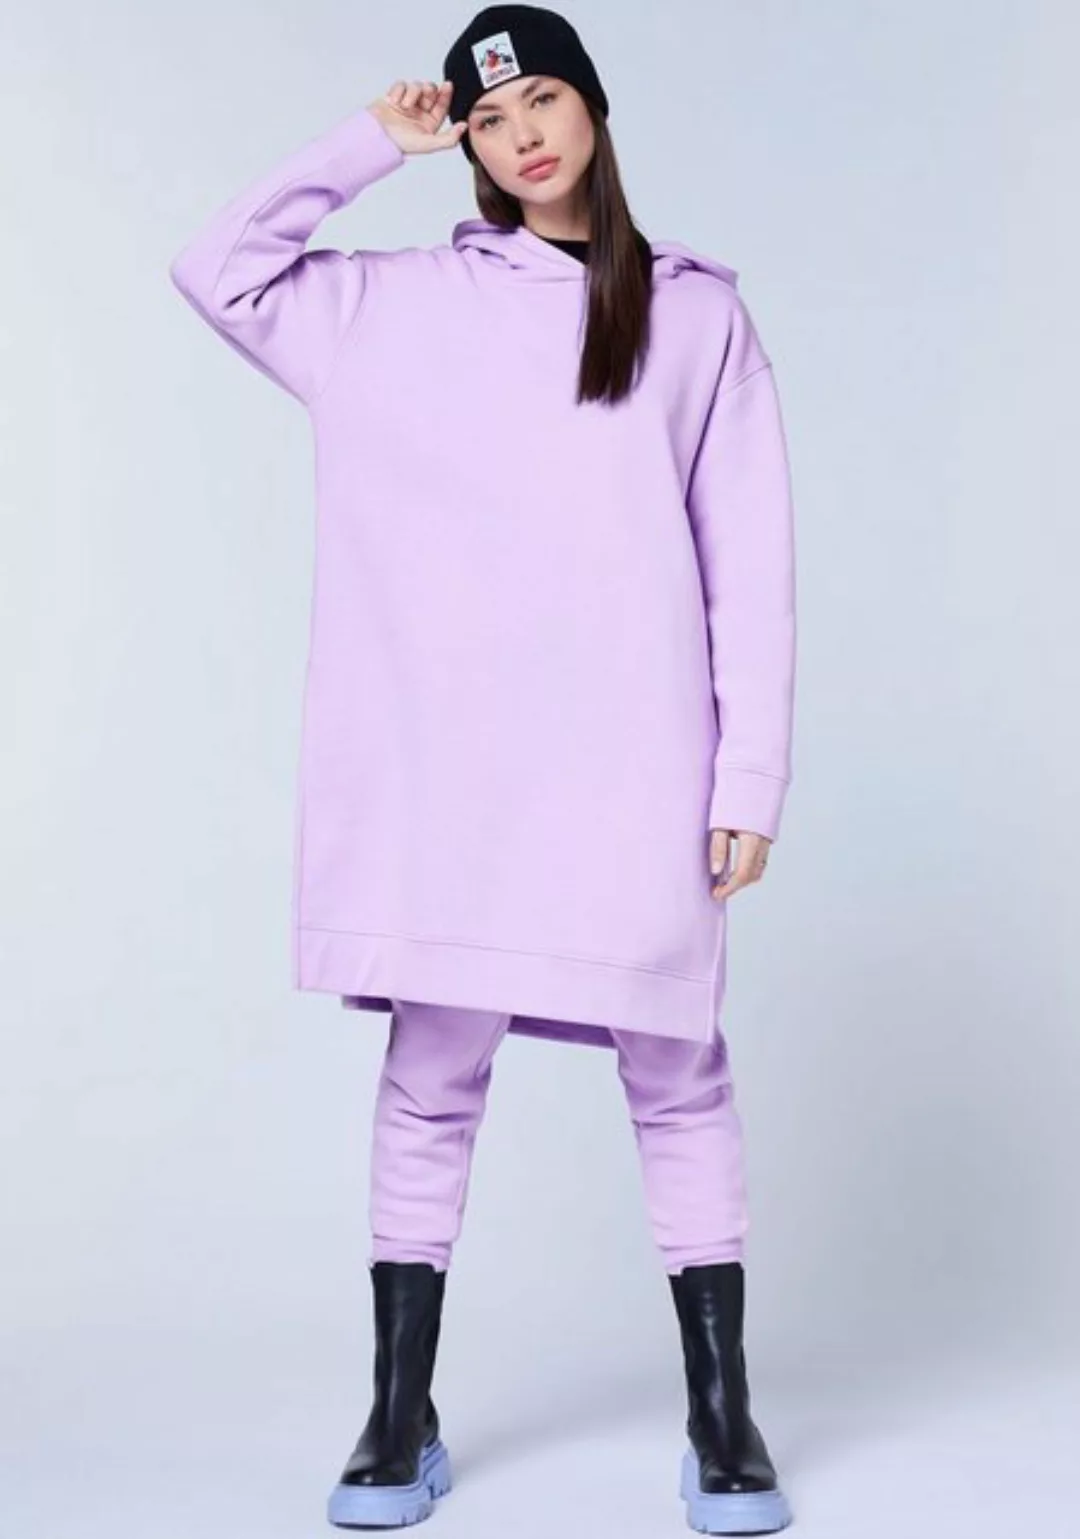 Chiemsee Sweatshirt PURPLE ROSE günstig online kaufen